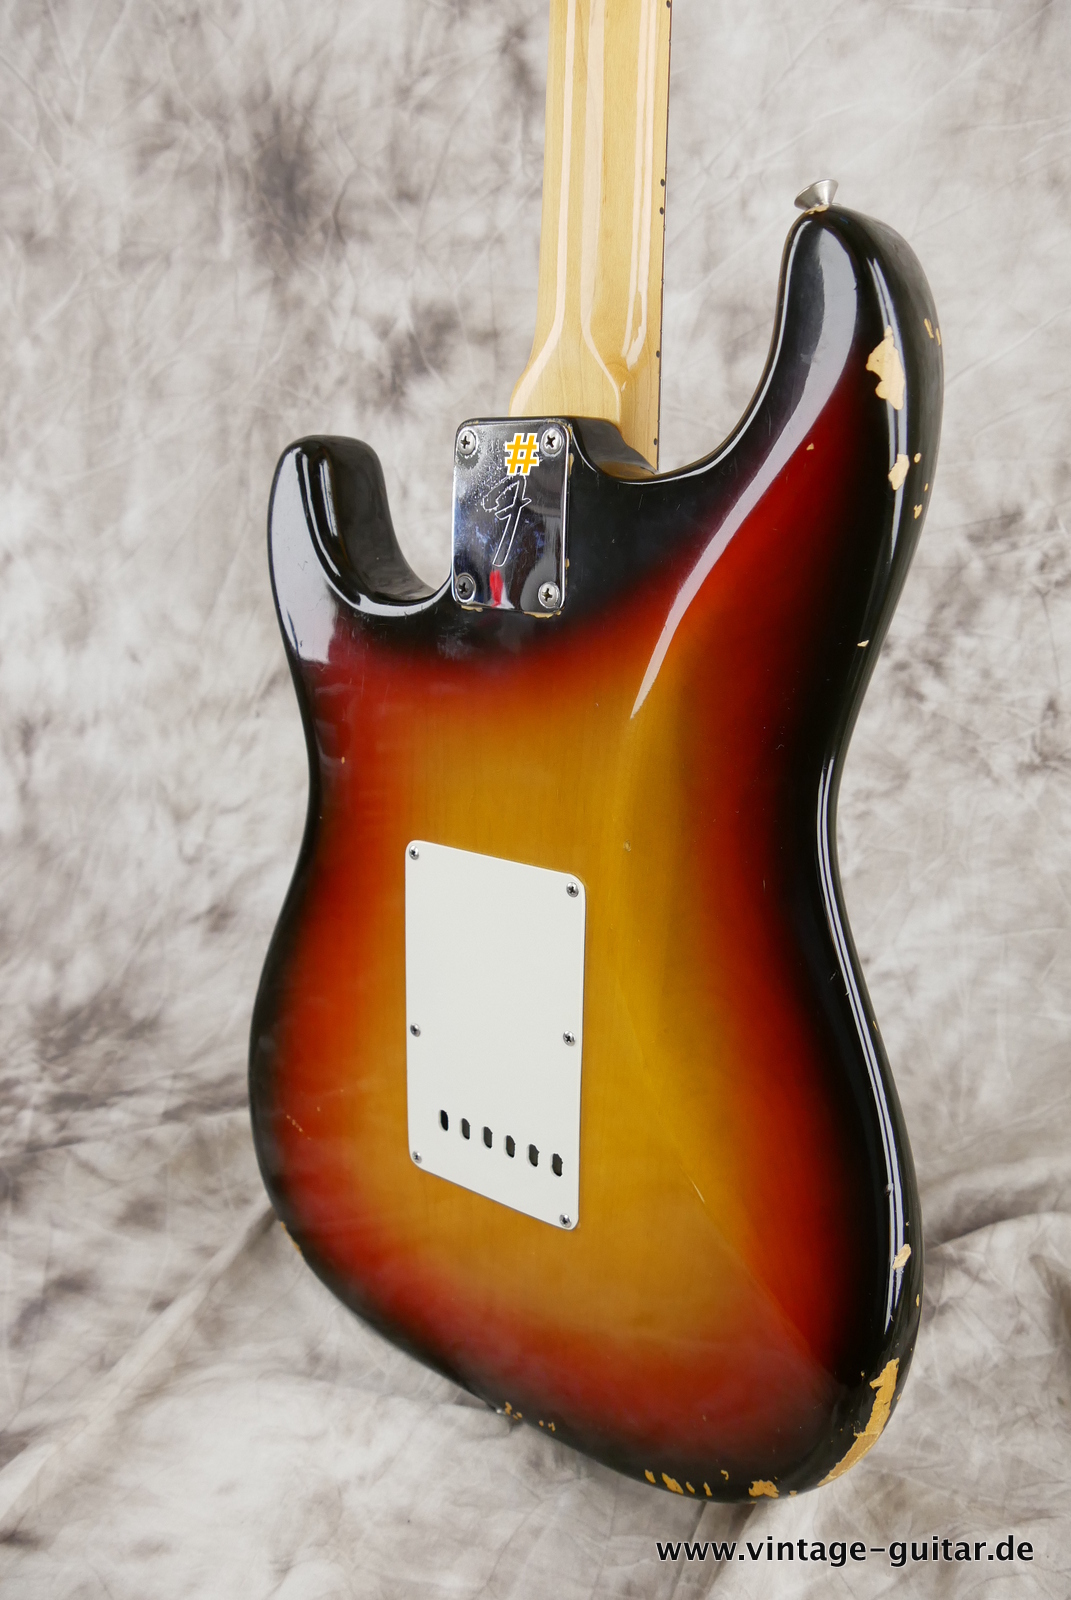 Fender-Stratocaster-1971-sunburst-4-hole-008.JPG